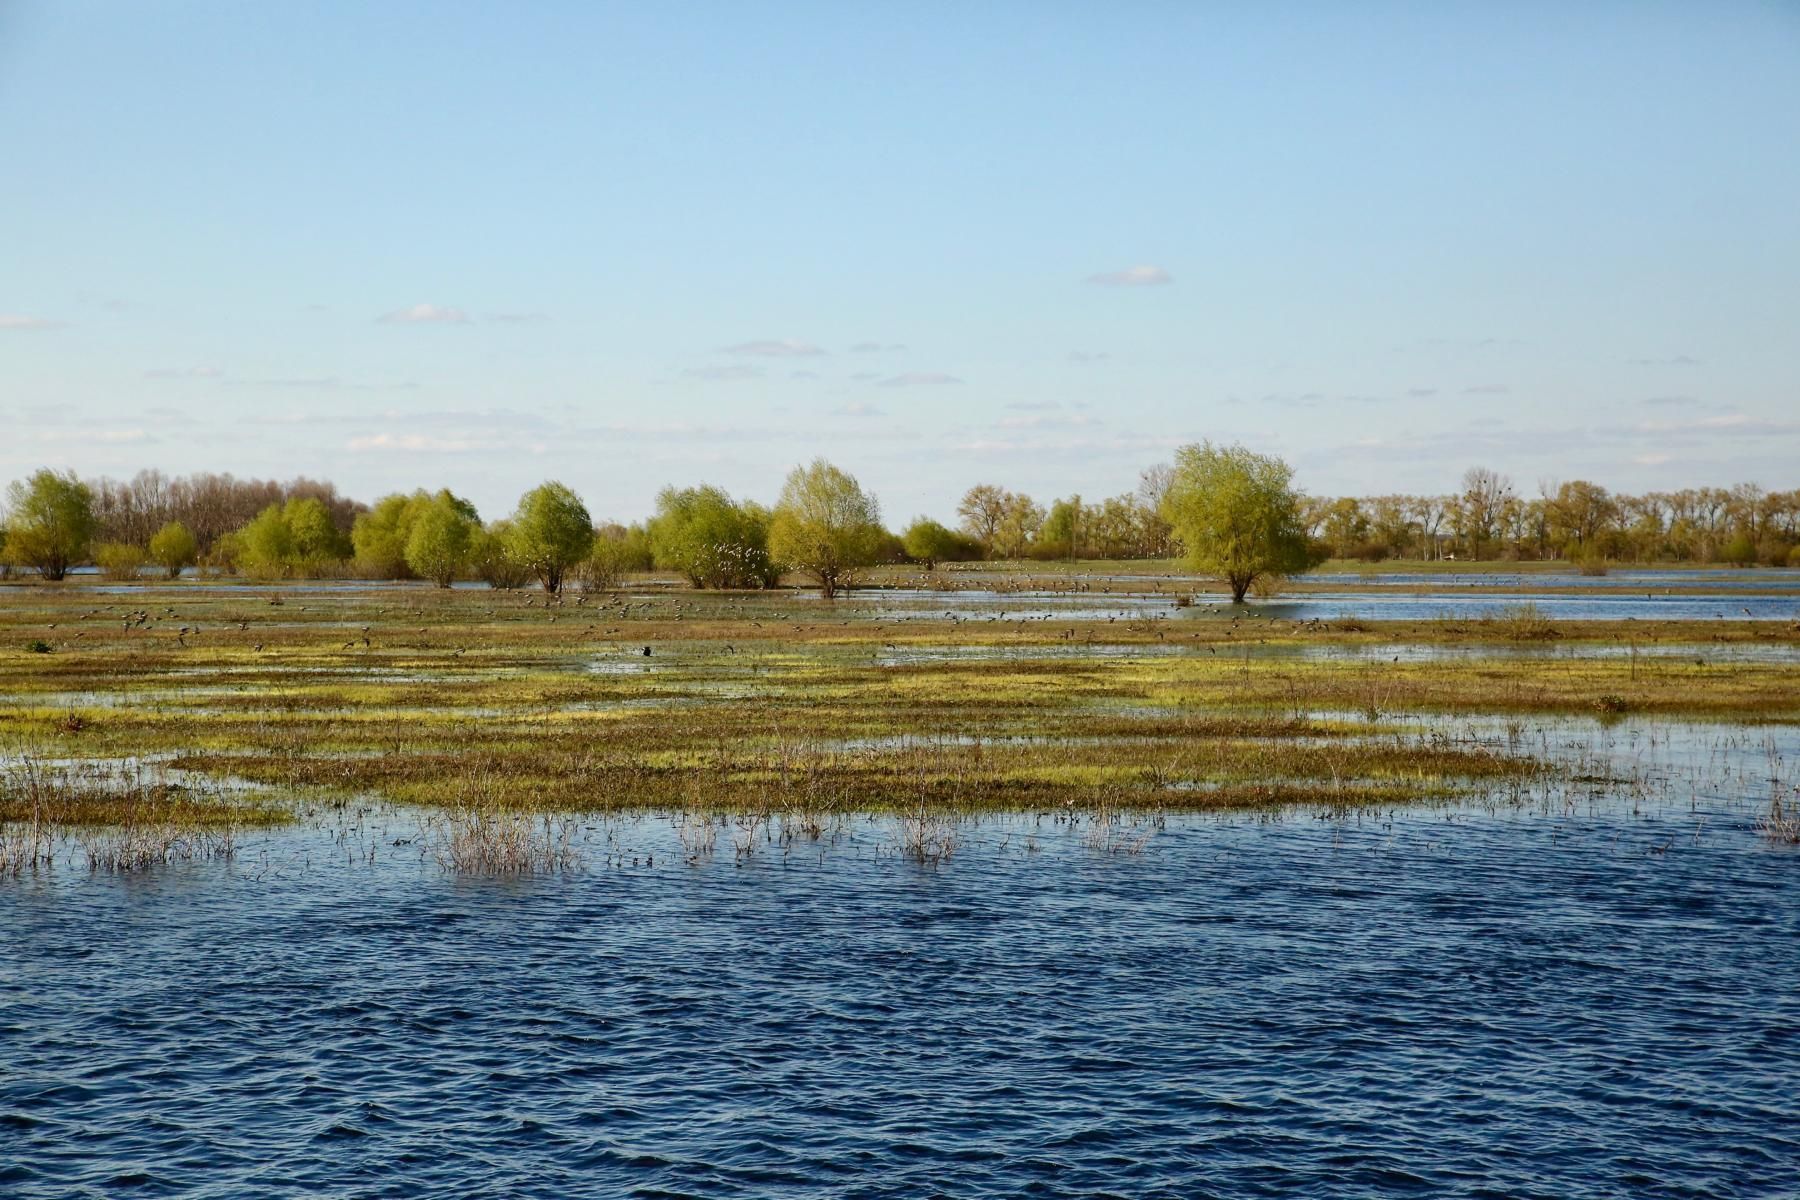 Река Припять вышла из берегов и затопила пойменные луга, образовав множество островов, которые так необходимы для гнездования птиц.